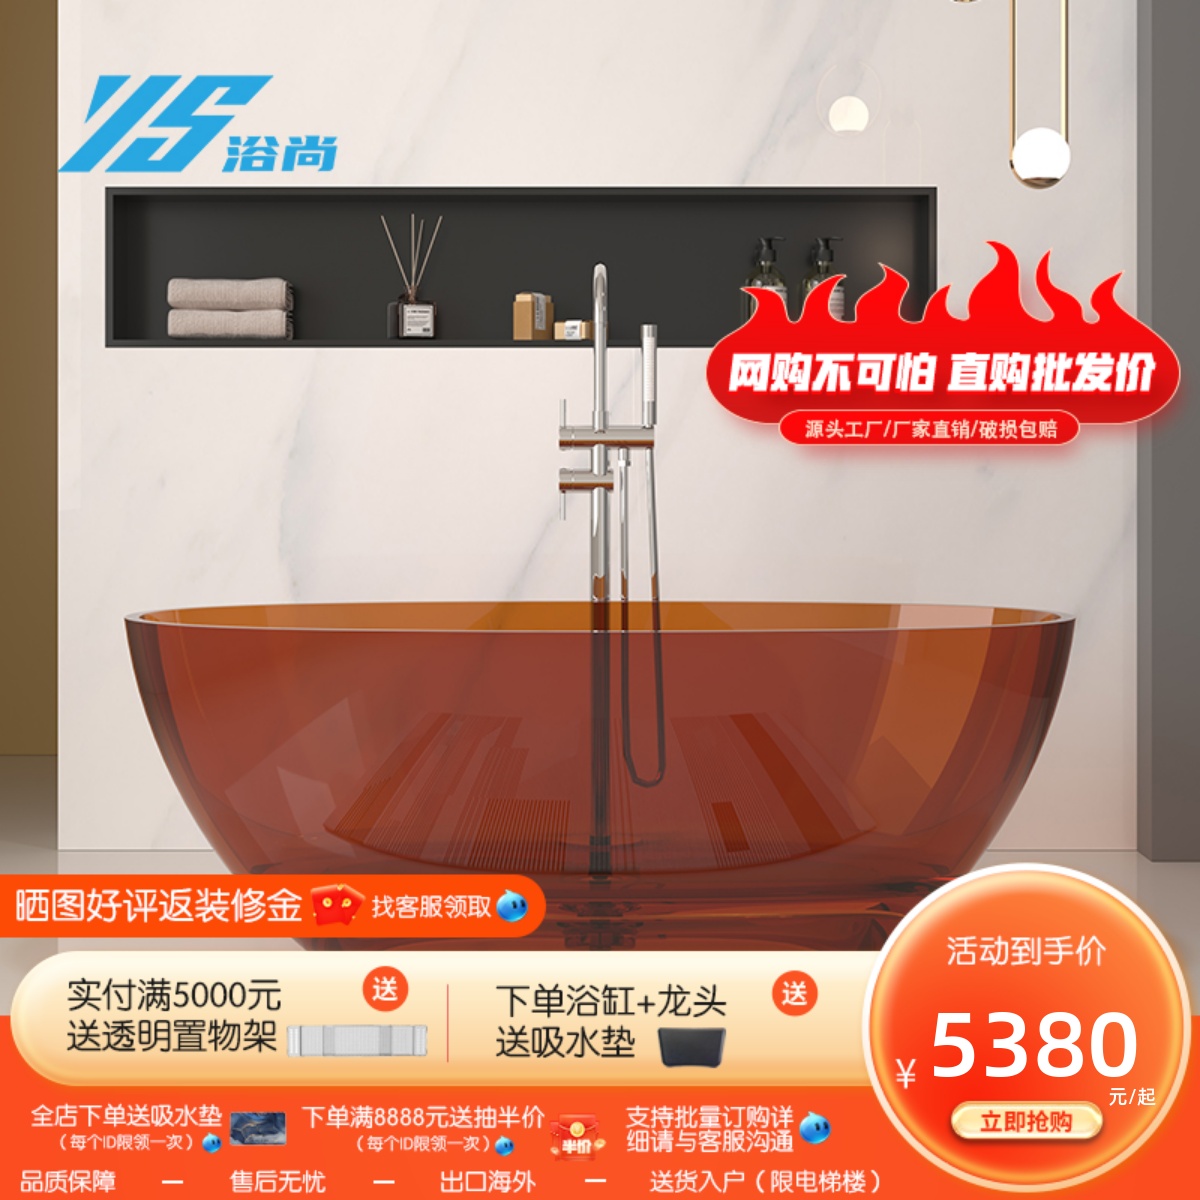 浴尚透明彩色水晶树脂网红独立式人造石浴缸家用小户型独立浴盆